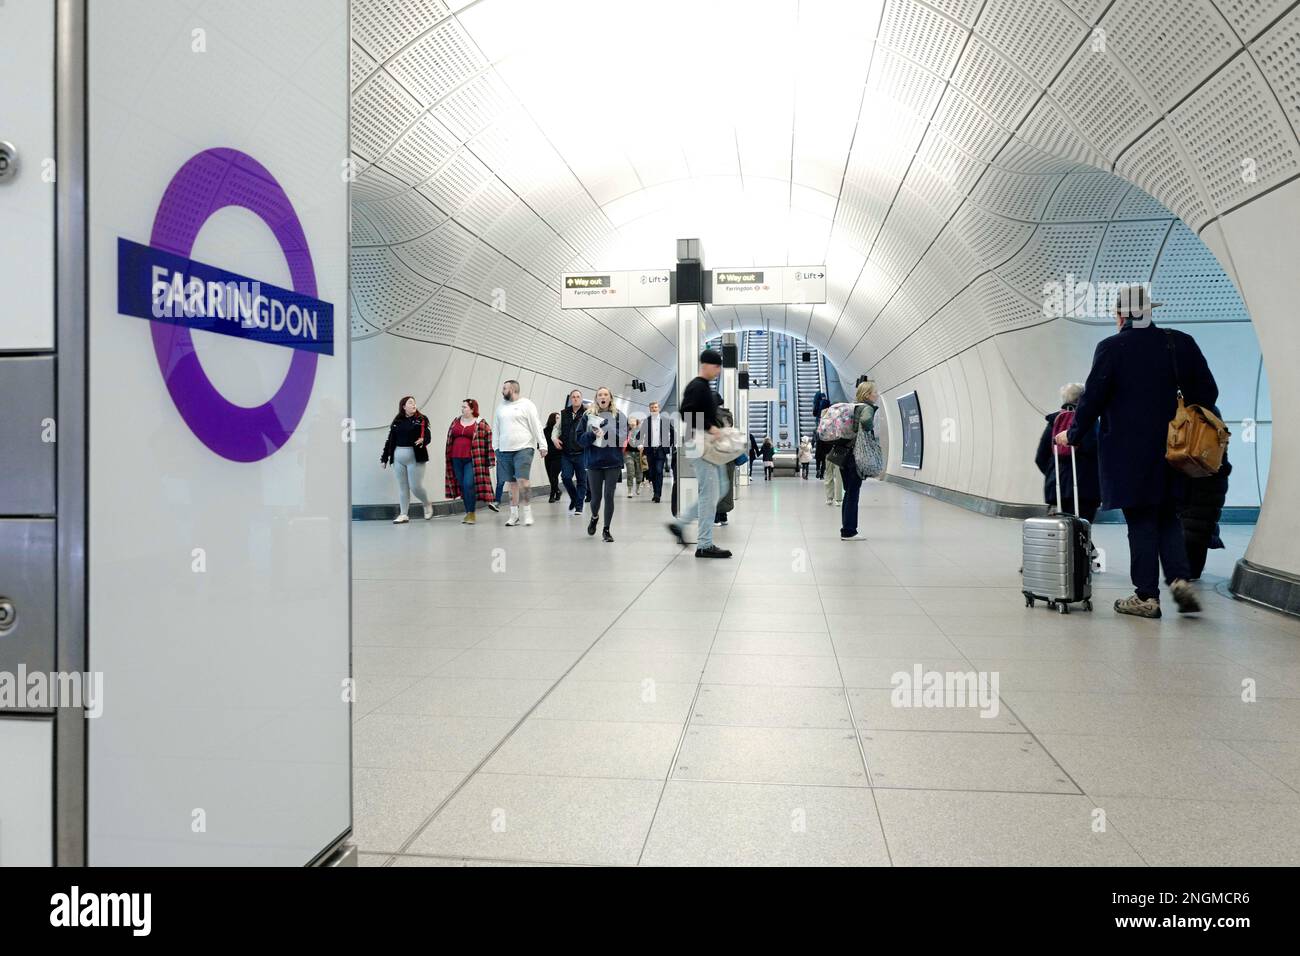 Station de métro Farringdon Elizabeth Line, Londres, Royaume-Uni Banque D'Images